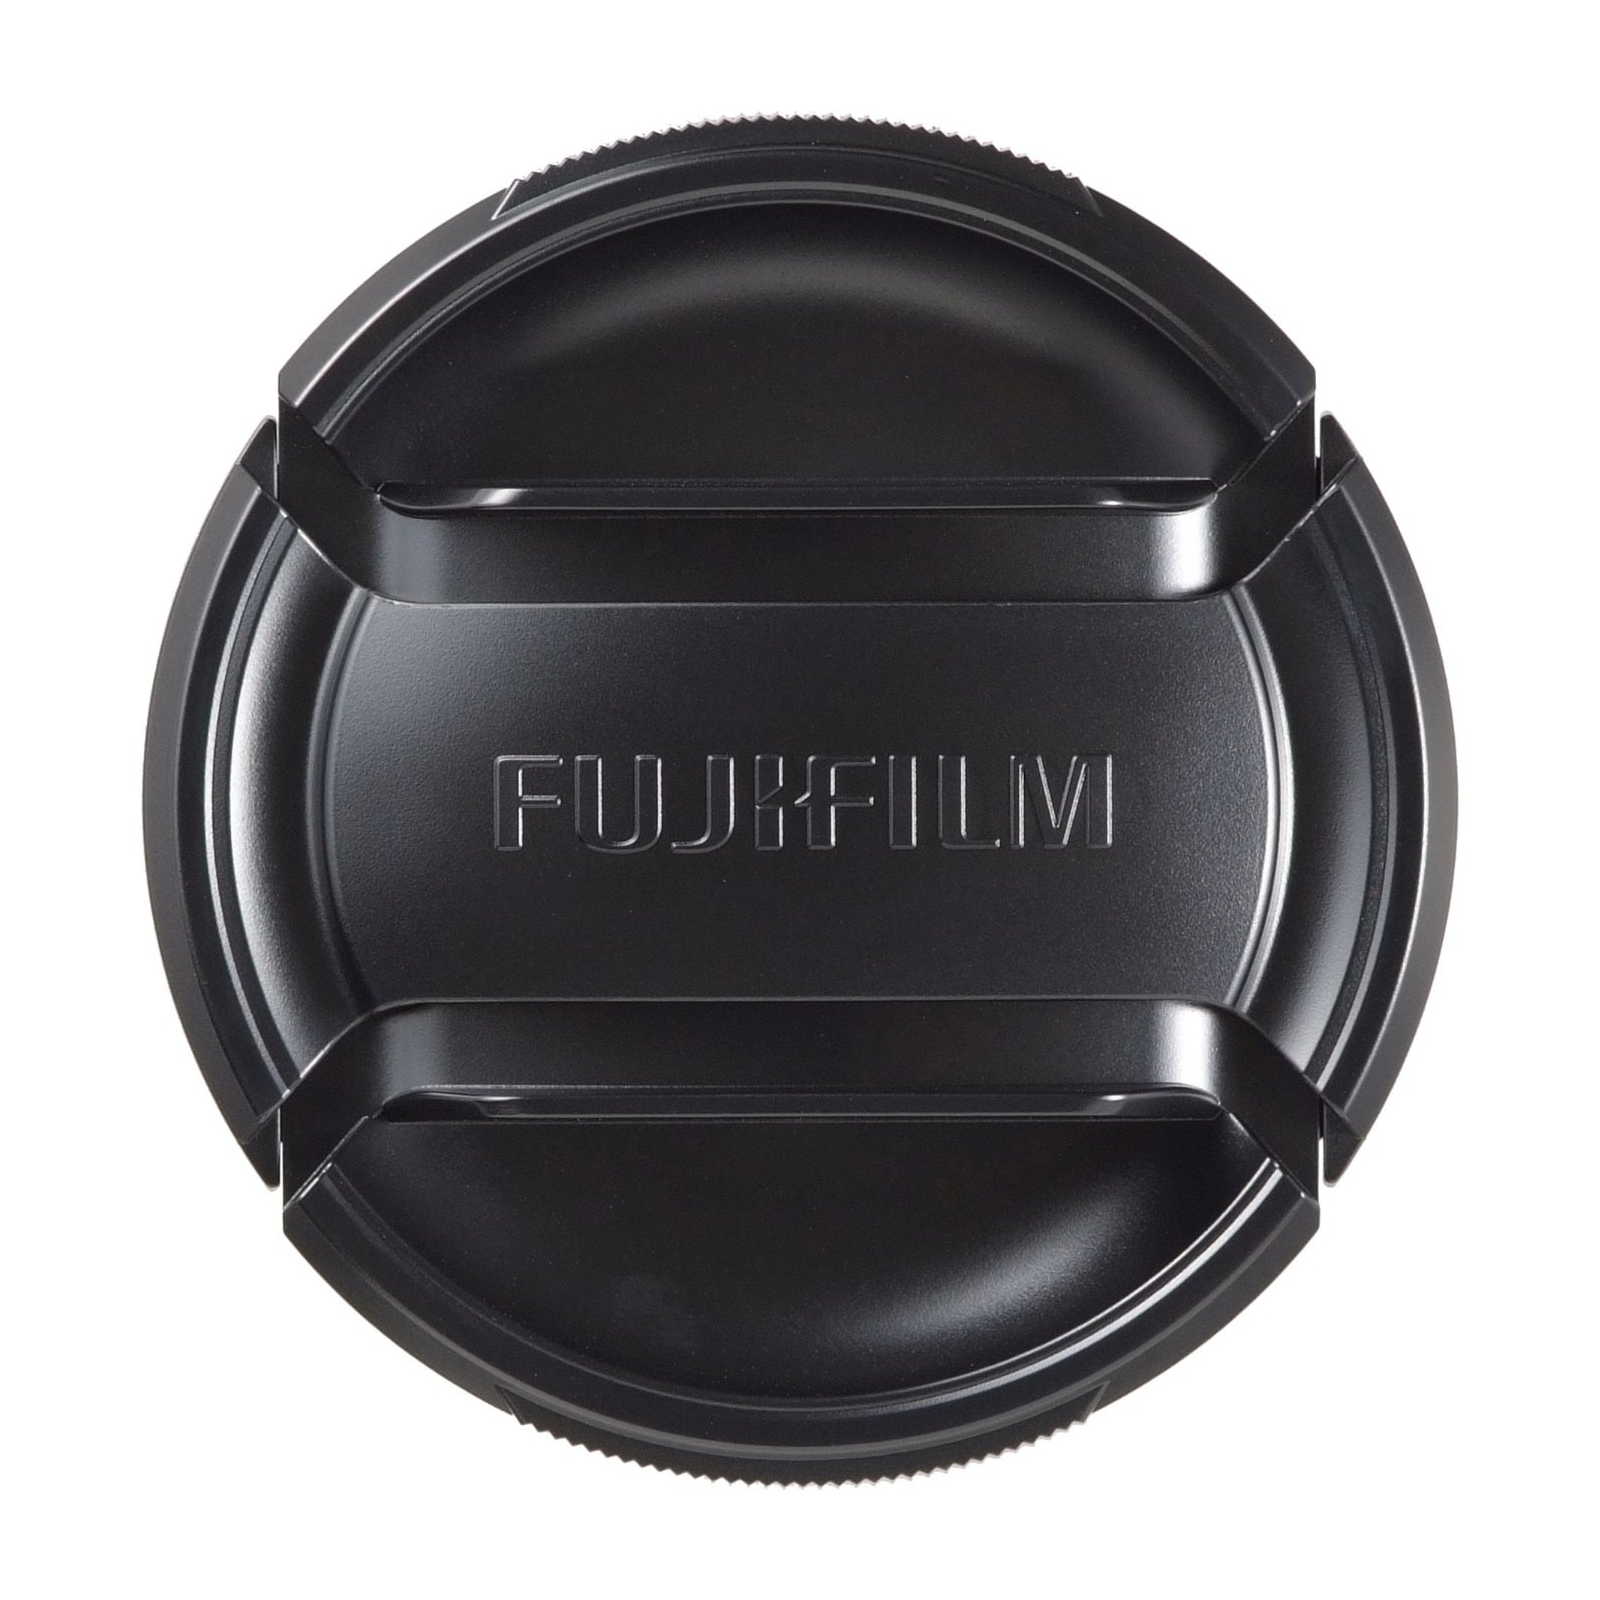 Крышка объектива Fujifilm FLCP-67 (16429624)